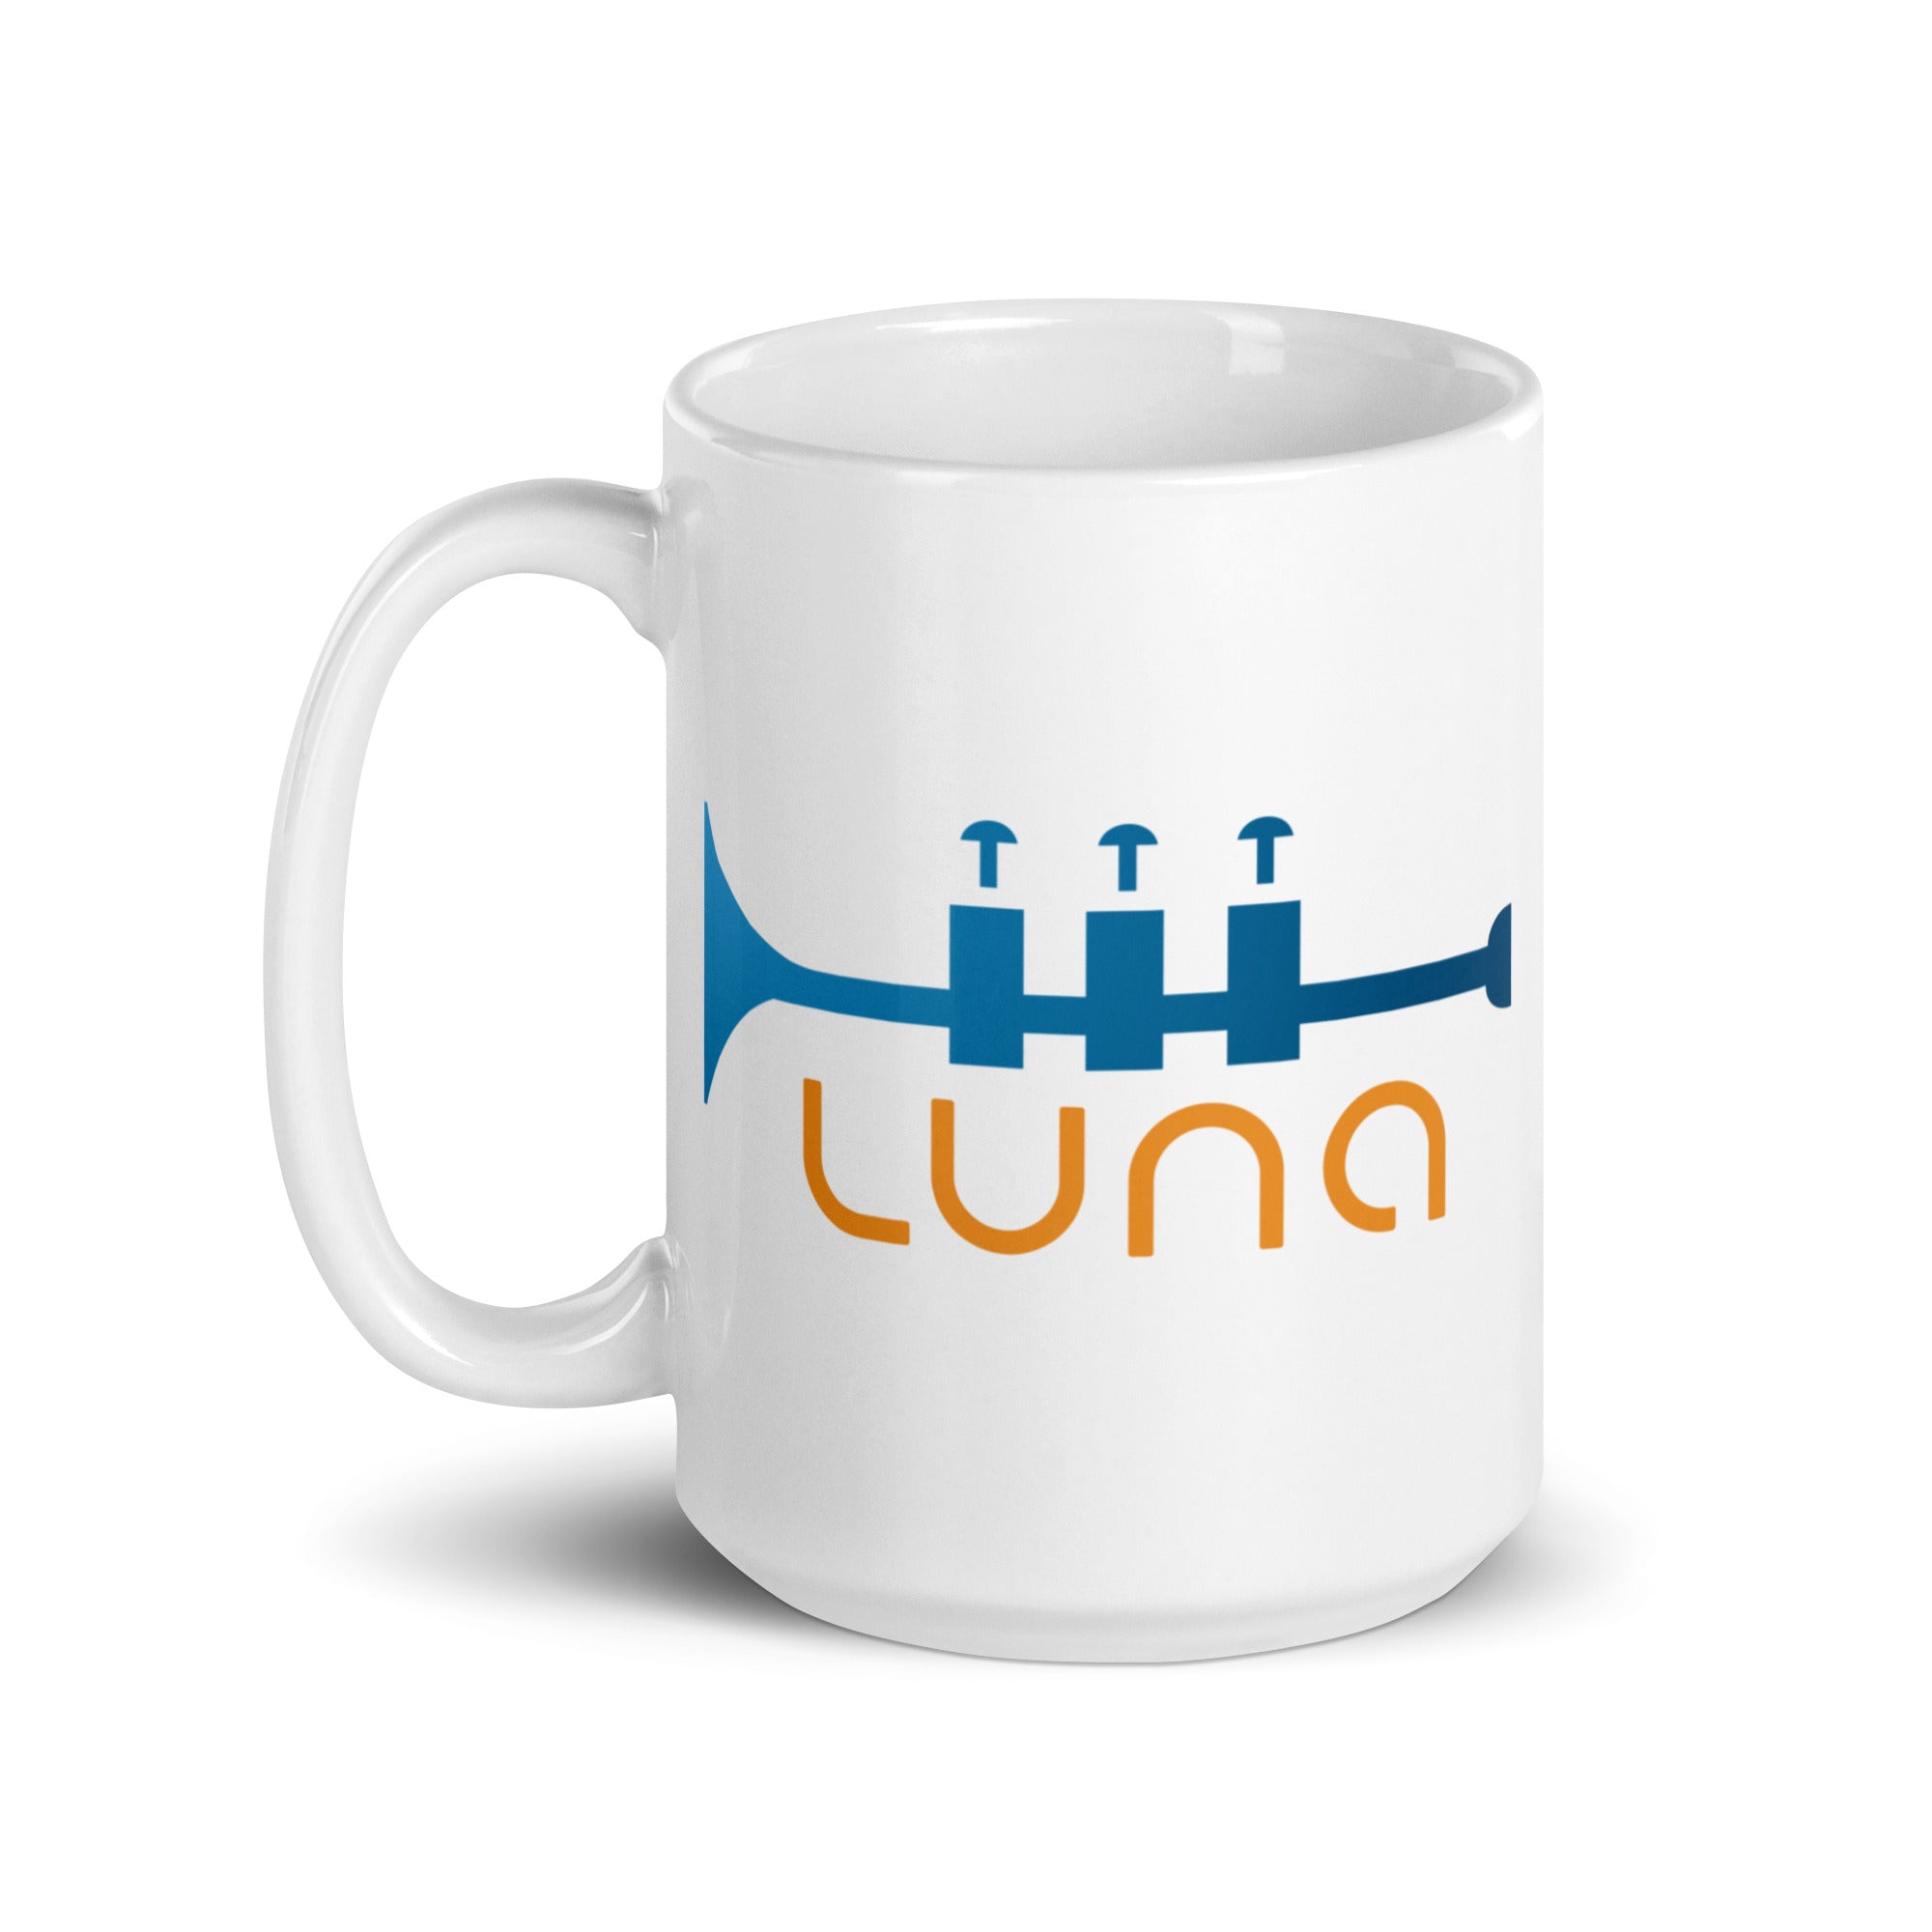 Luna: Mug